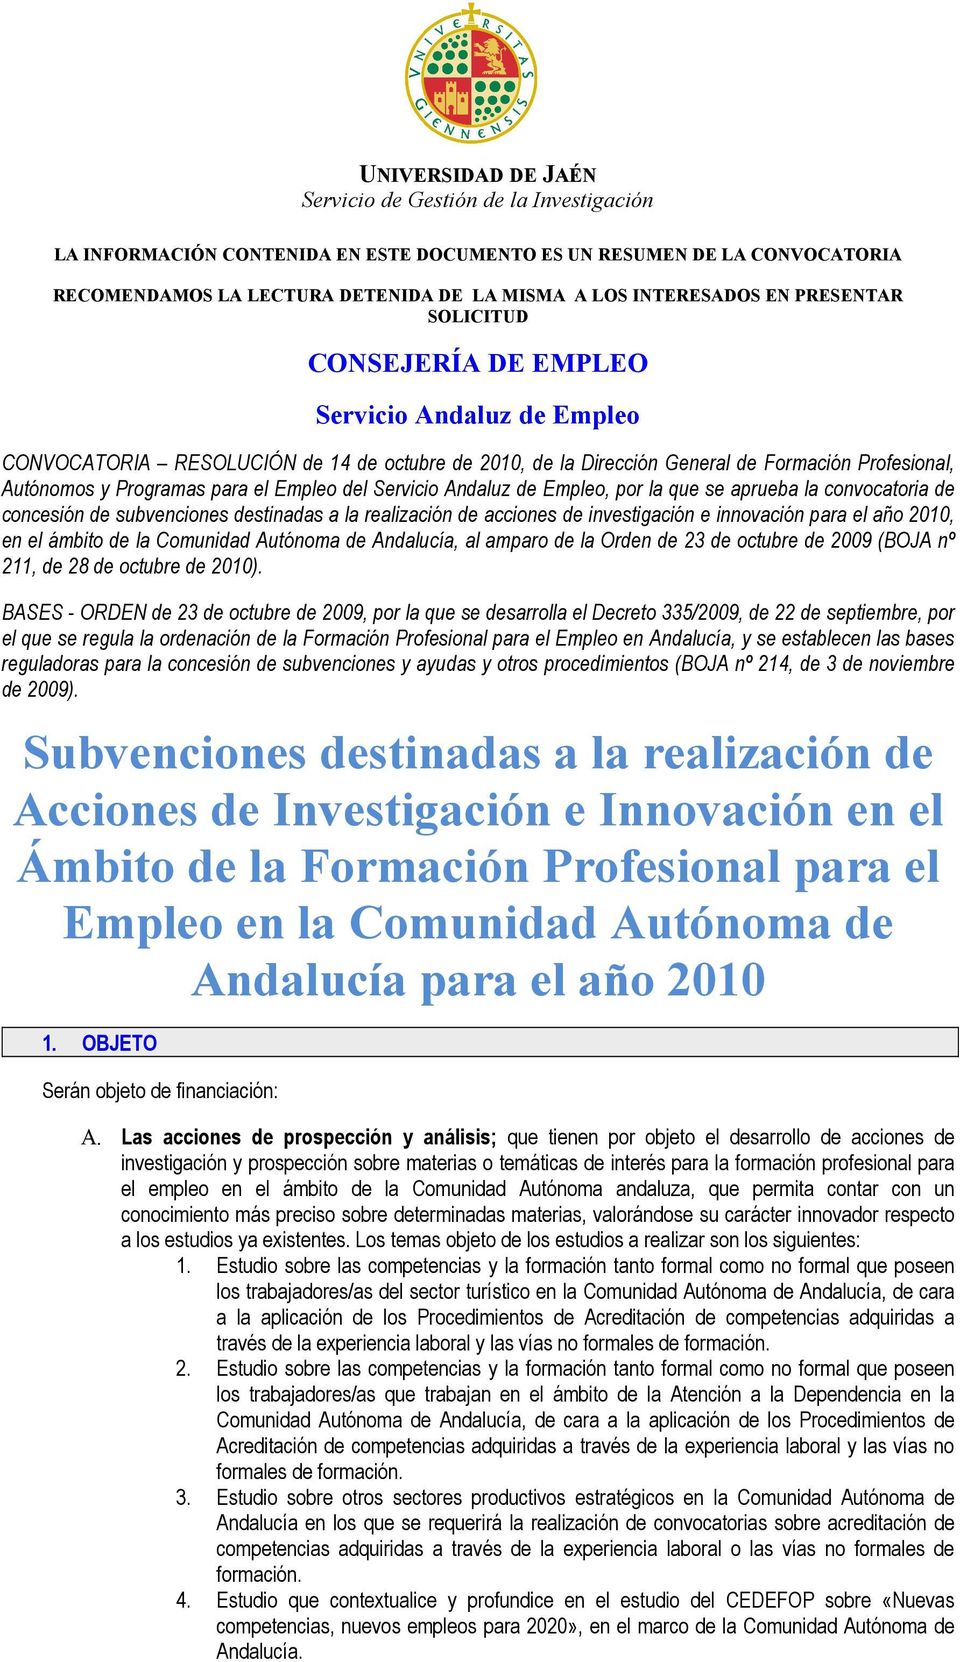 aprueba la convocatoria de concesión de subvenciones destinadas a la realización de acciones de investigación e innovación para el año 2010, en el ámbito de la Comunidad Autónoma de Andalucía, al